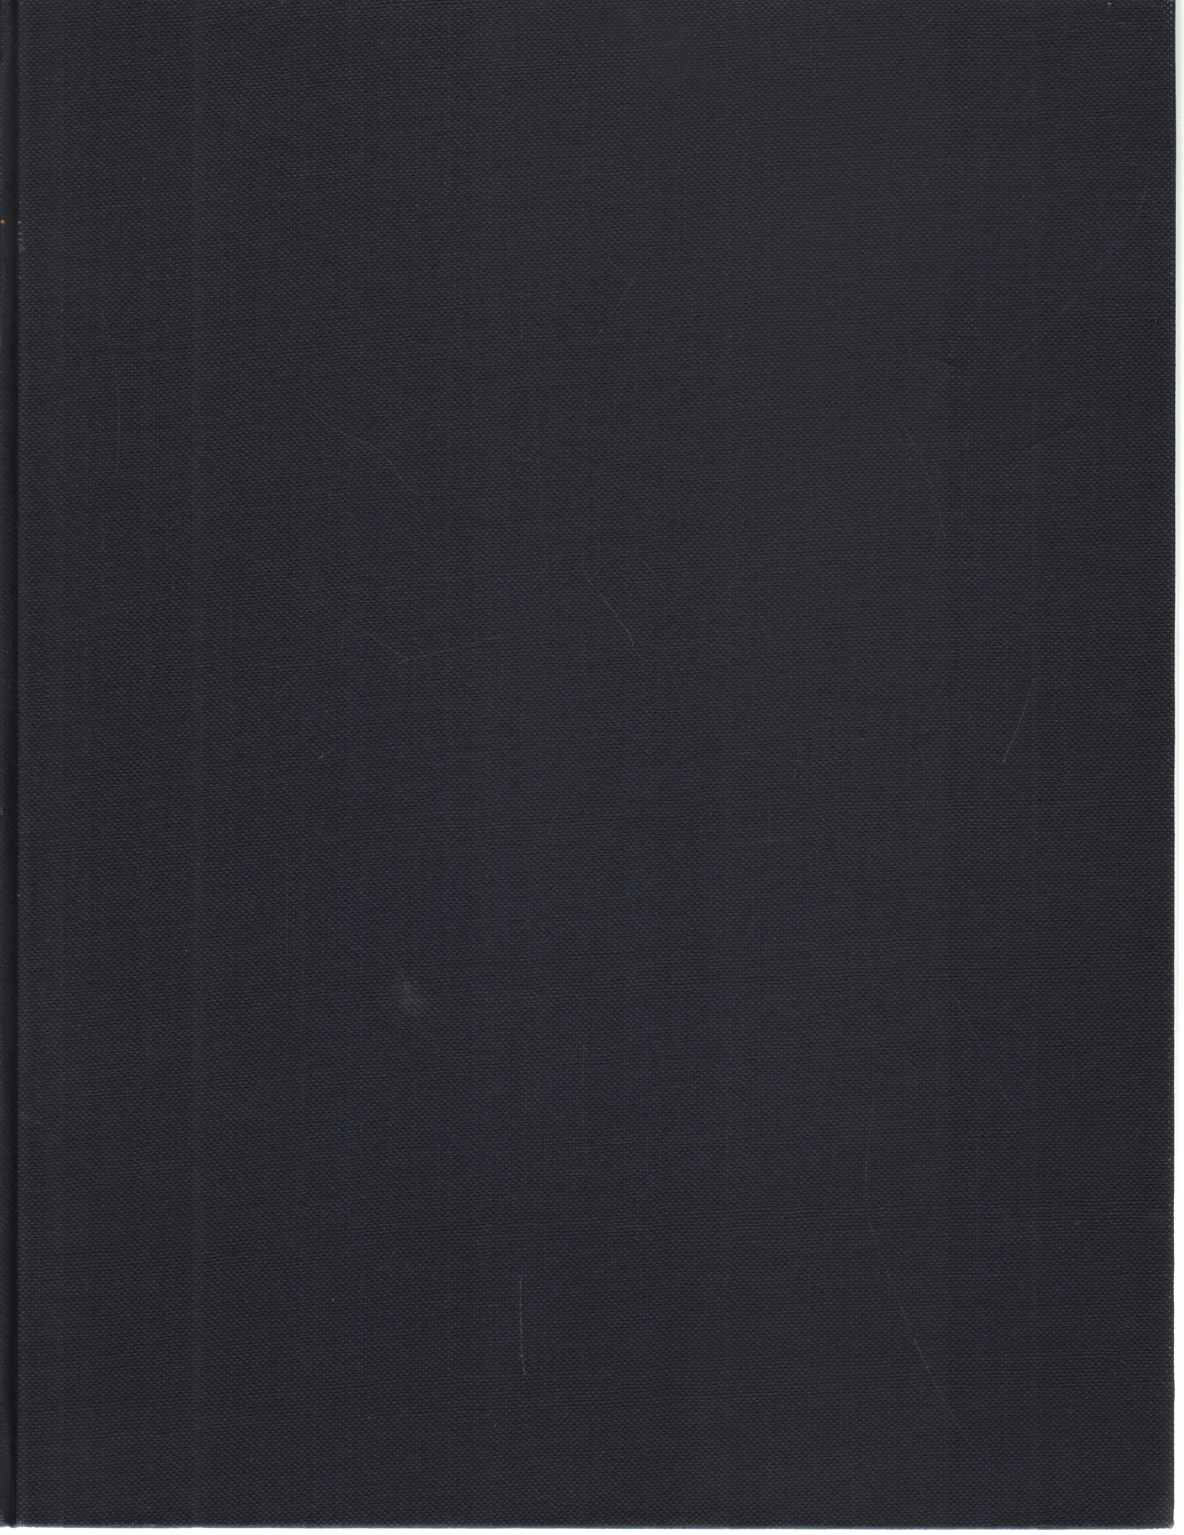 Catalogue des Objets d'art et d'ameublement du X, Galerie Jean Charpentier